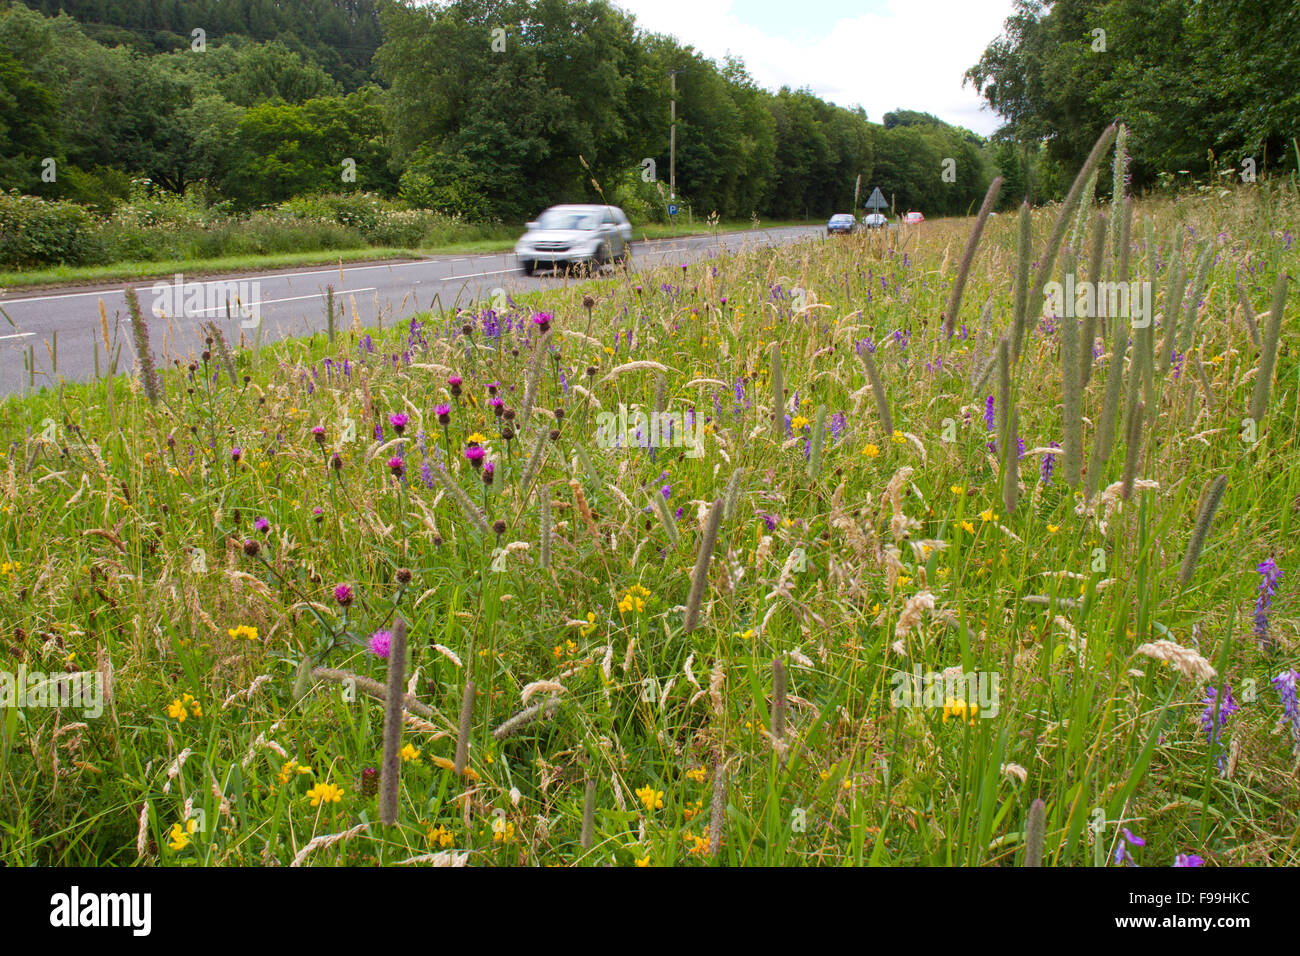 La centaurée commune (Centaurea nigra) et d'autres fleurs sauvages sur un bord de route. A470 près de Llanidloes, Powys, Pays de Galles, juillet. Banque D'Images